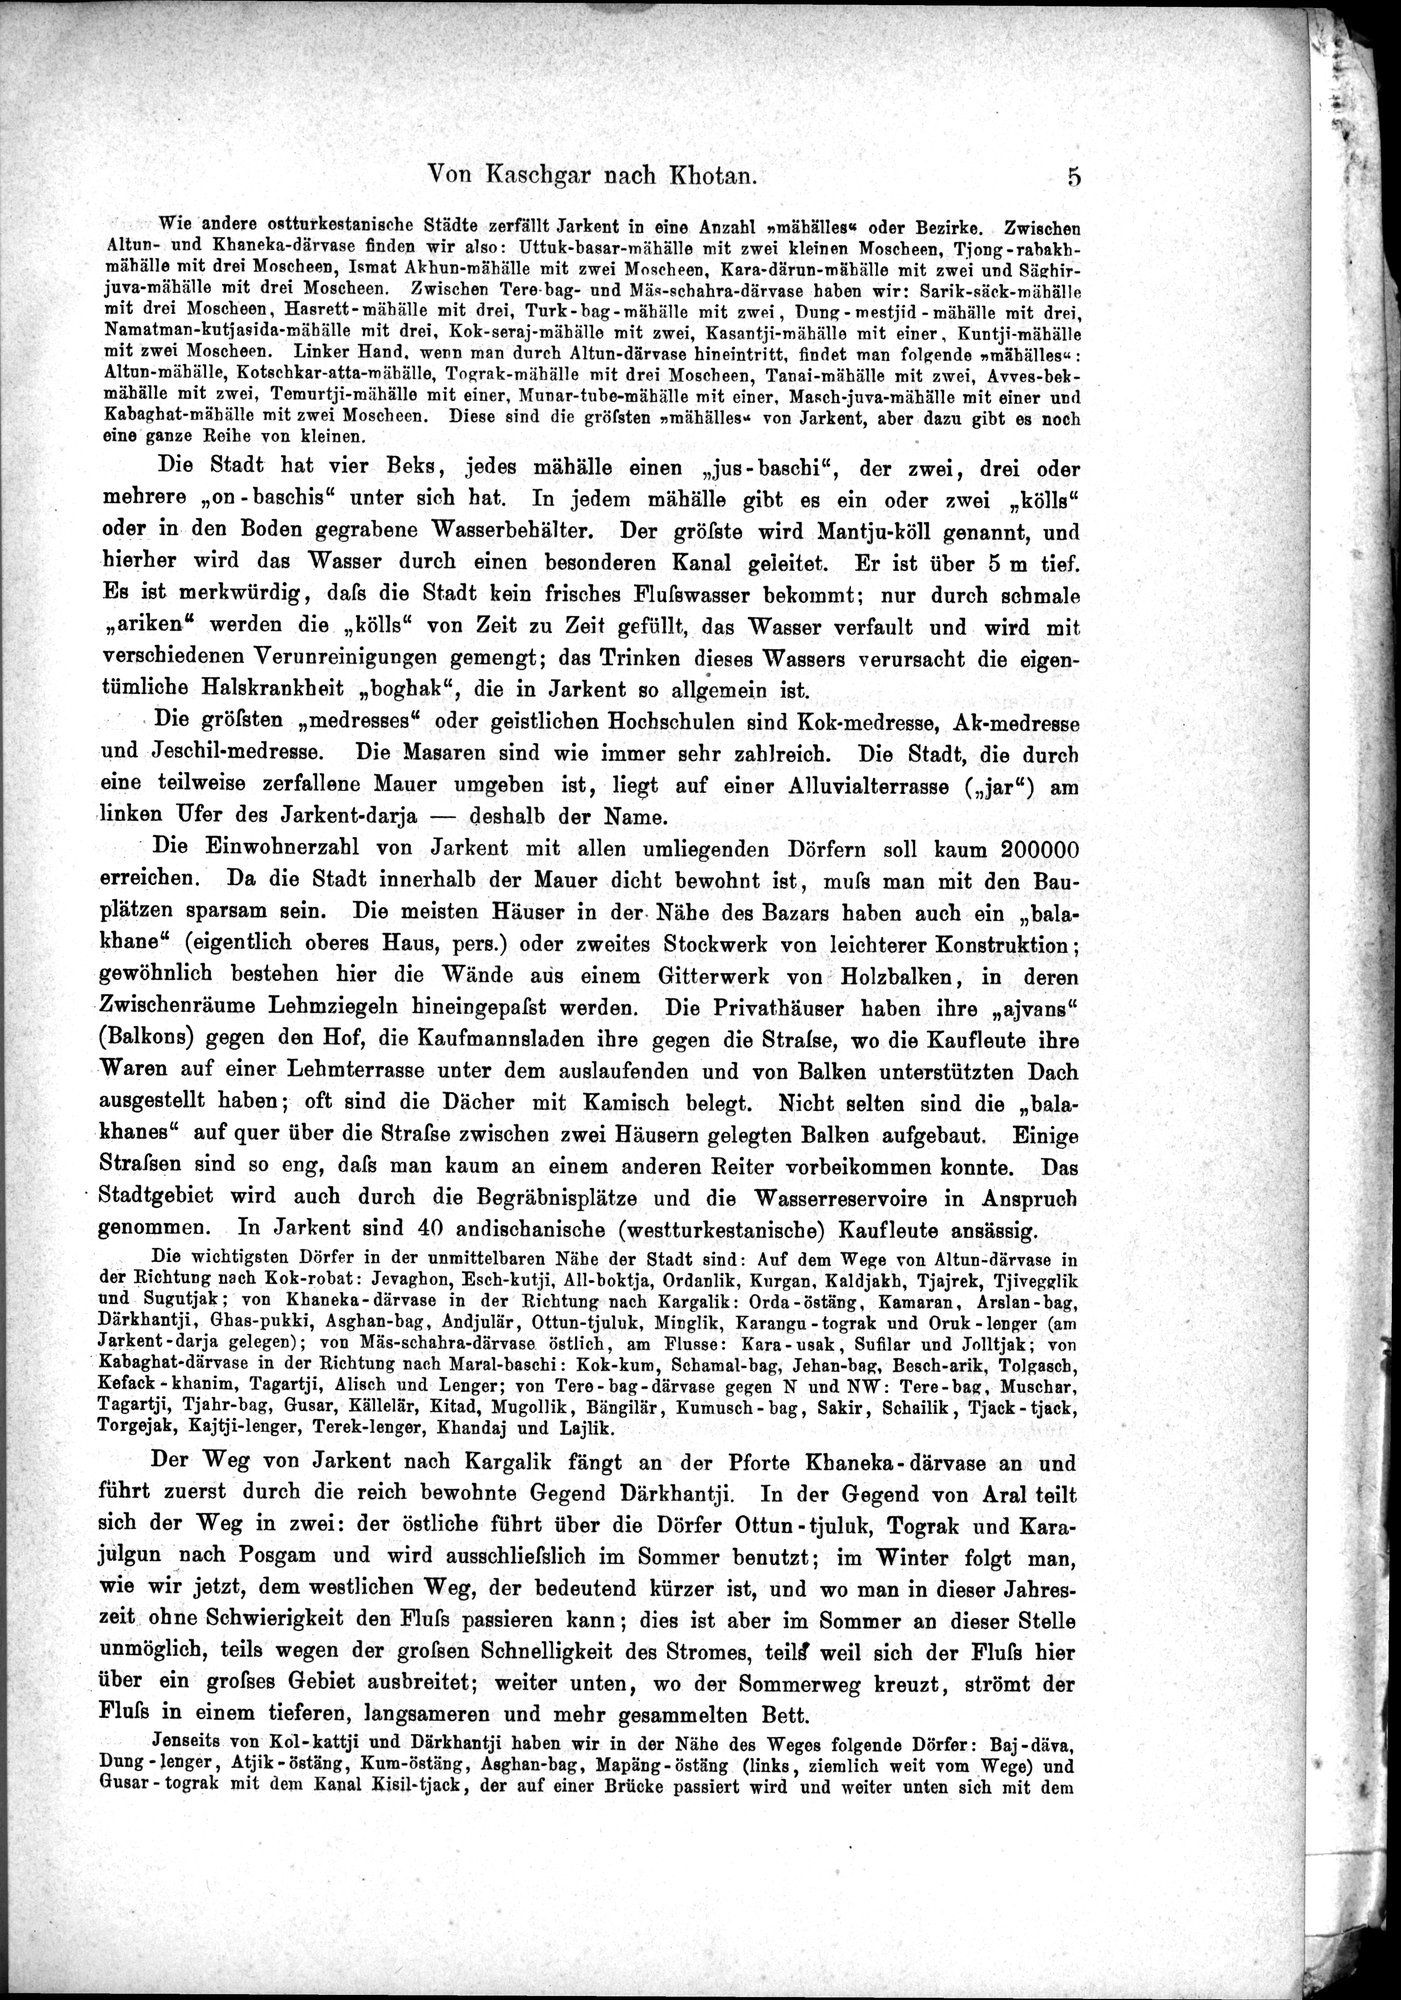 Die Geographische-Wissenschaftlichen Ergebnisse meiner Reisen in Zentralasien, 1894-1897 : vol.1 / Page 17 (Grayscale High Resolution Image)